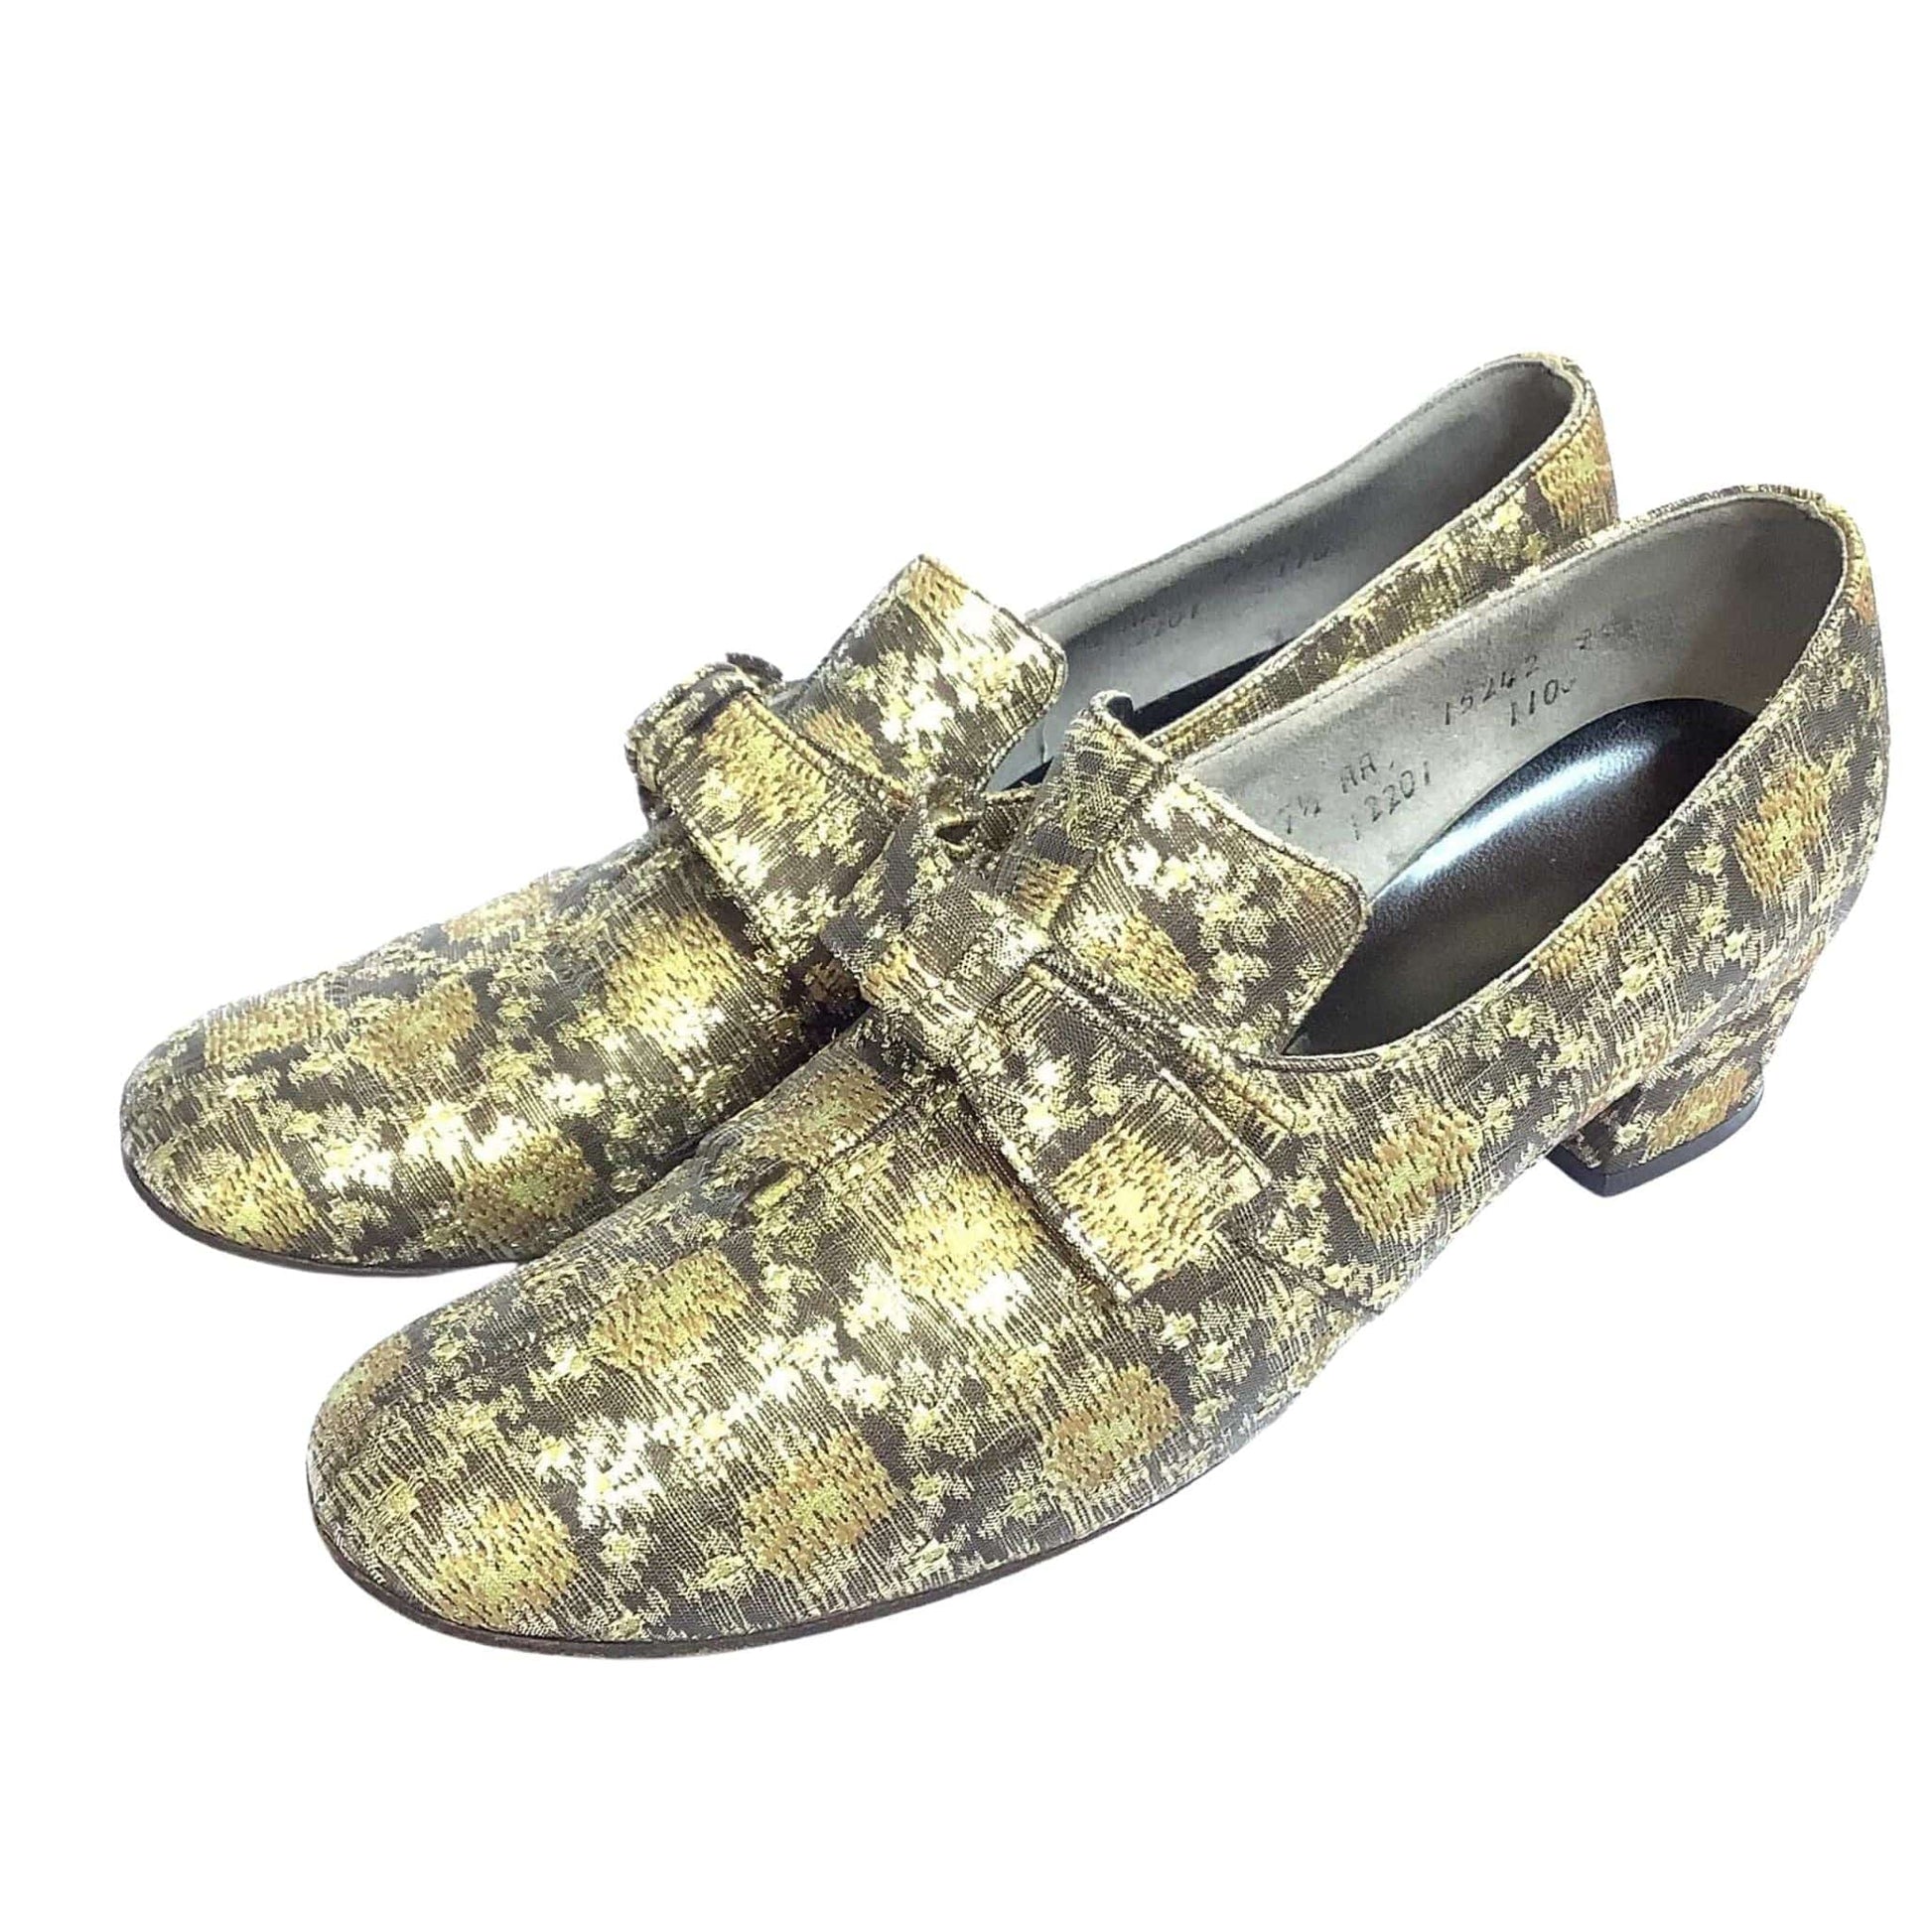 Vintage Bonwit Teller Loafers 7 / Gold / Vintage 1960s